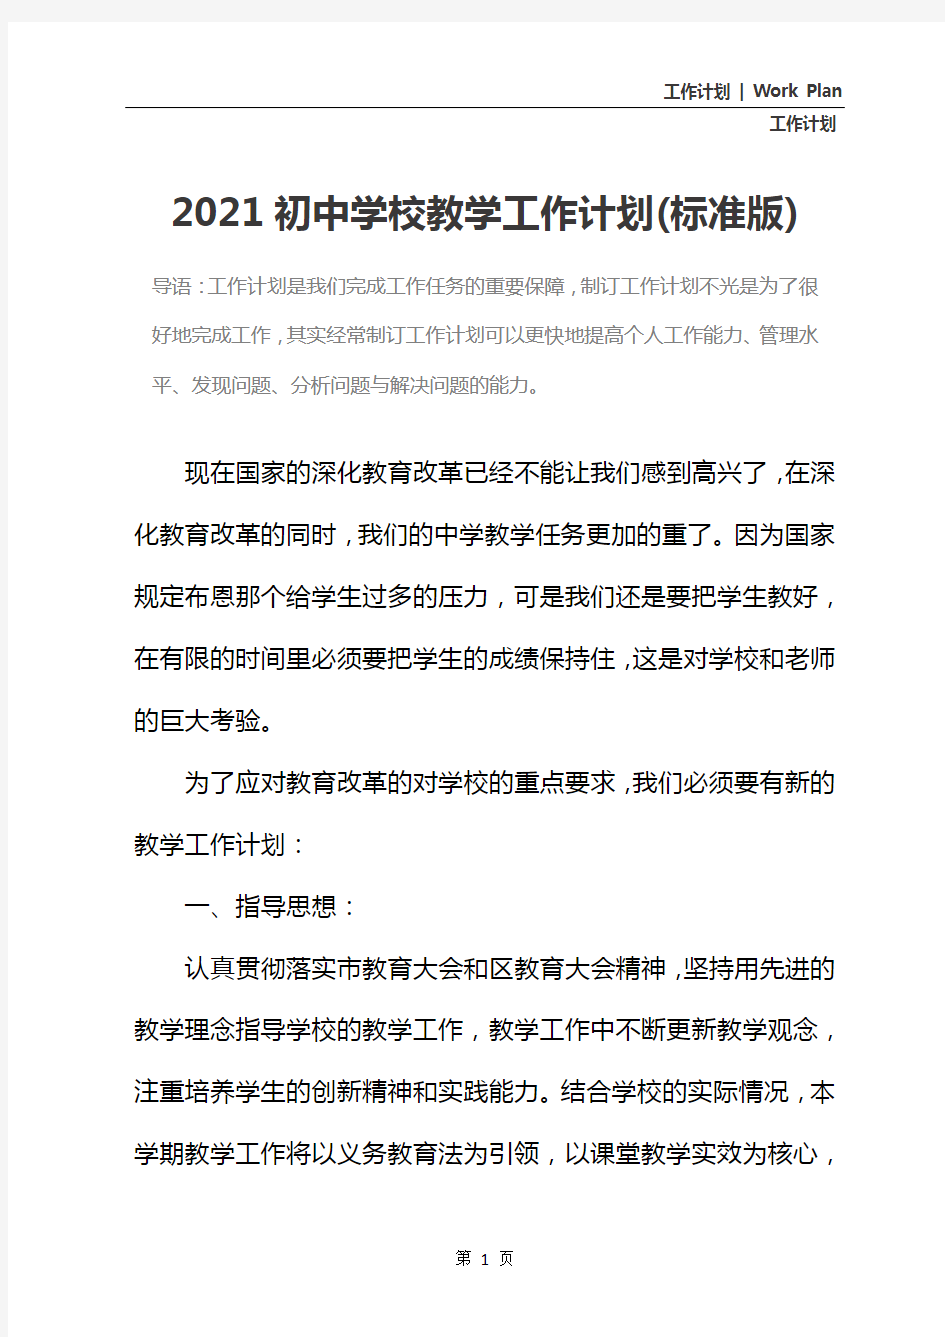 2021初中学校教学工作计划(标准版)